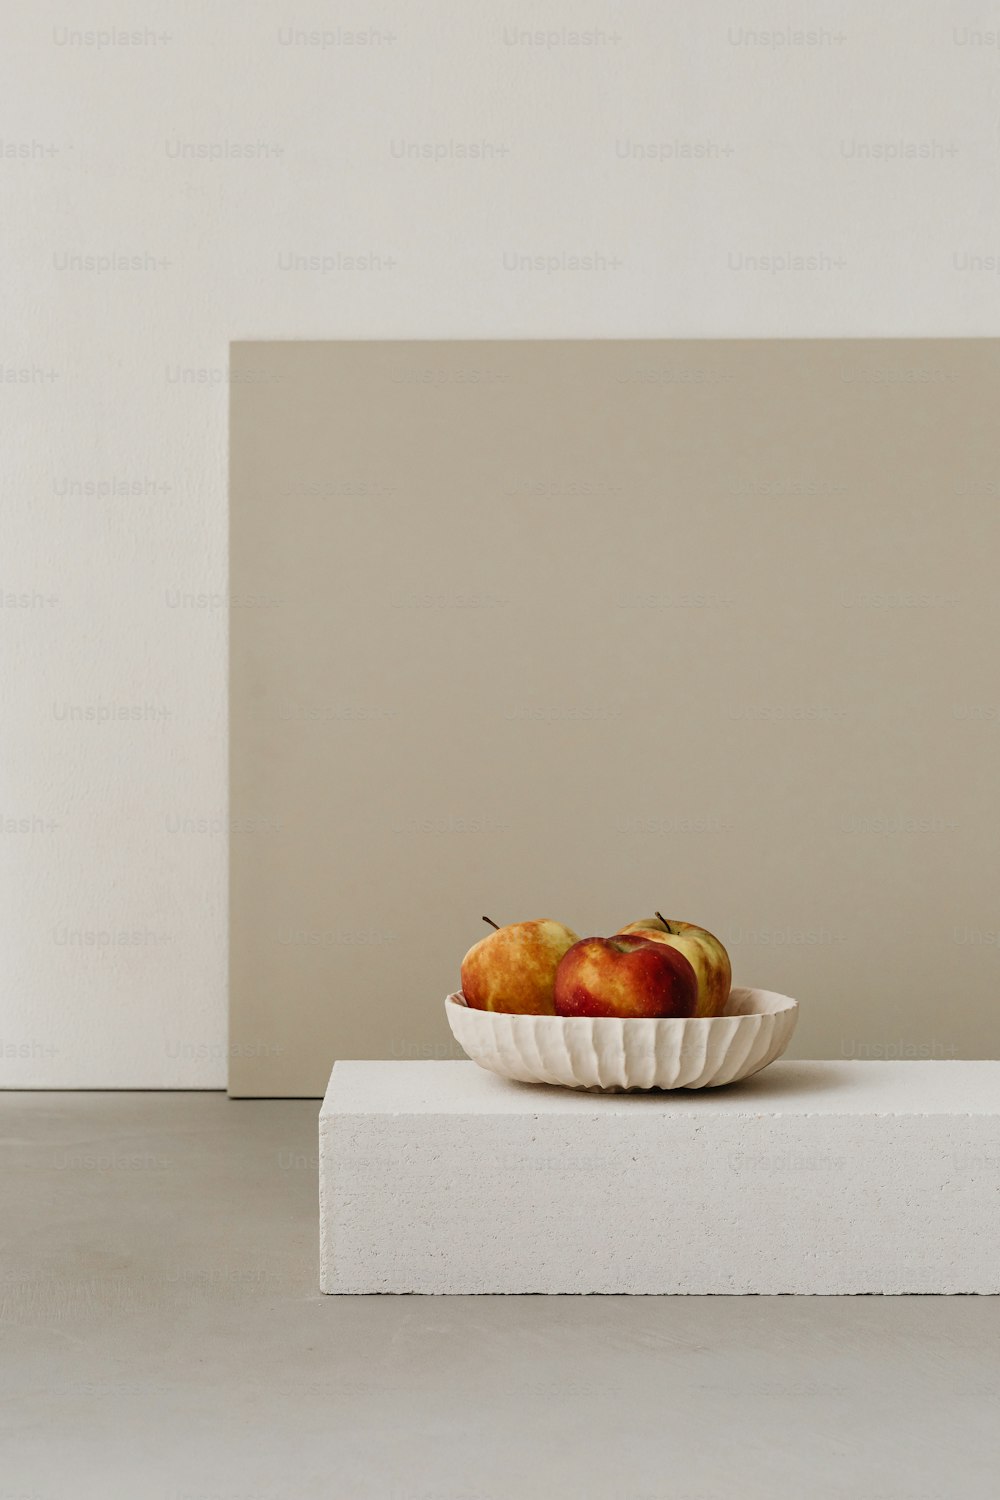 하얀 블록 위에 앉아 있는 과일 한 그릇